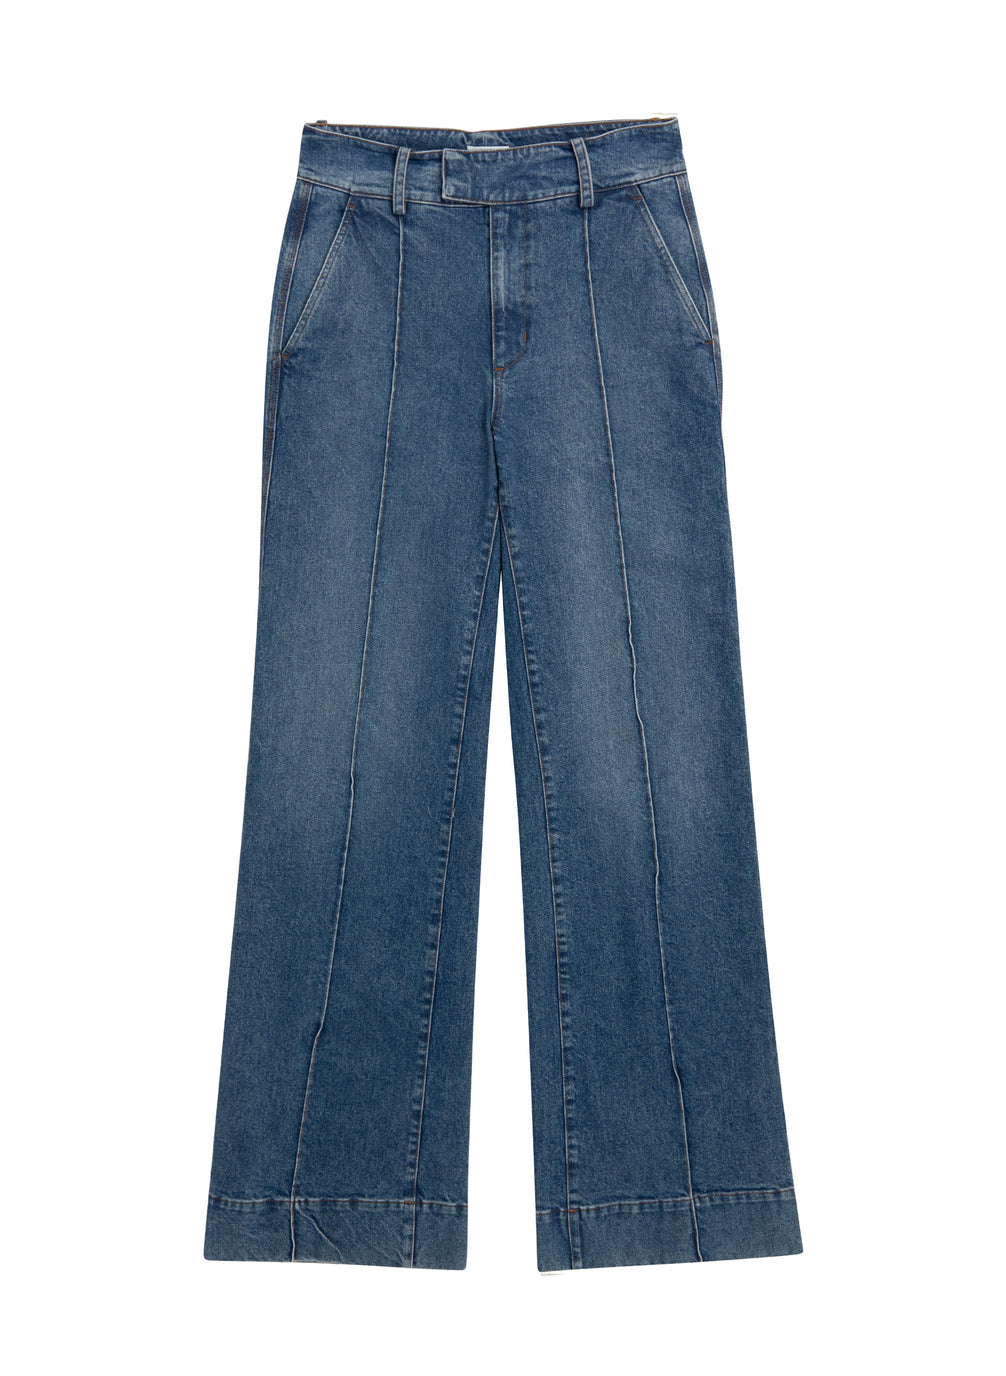 flatlay of medium blue wash wide leg denim jeans